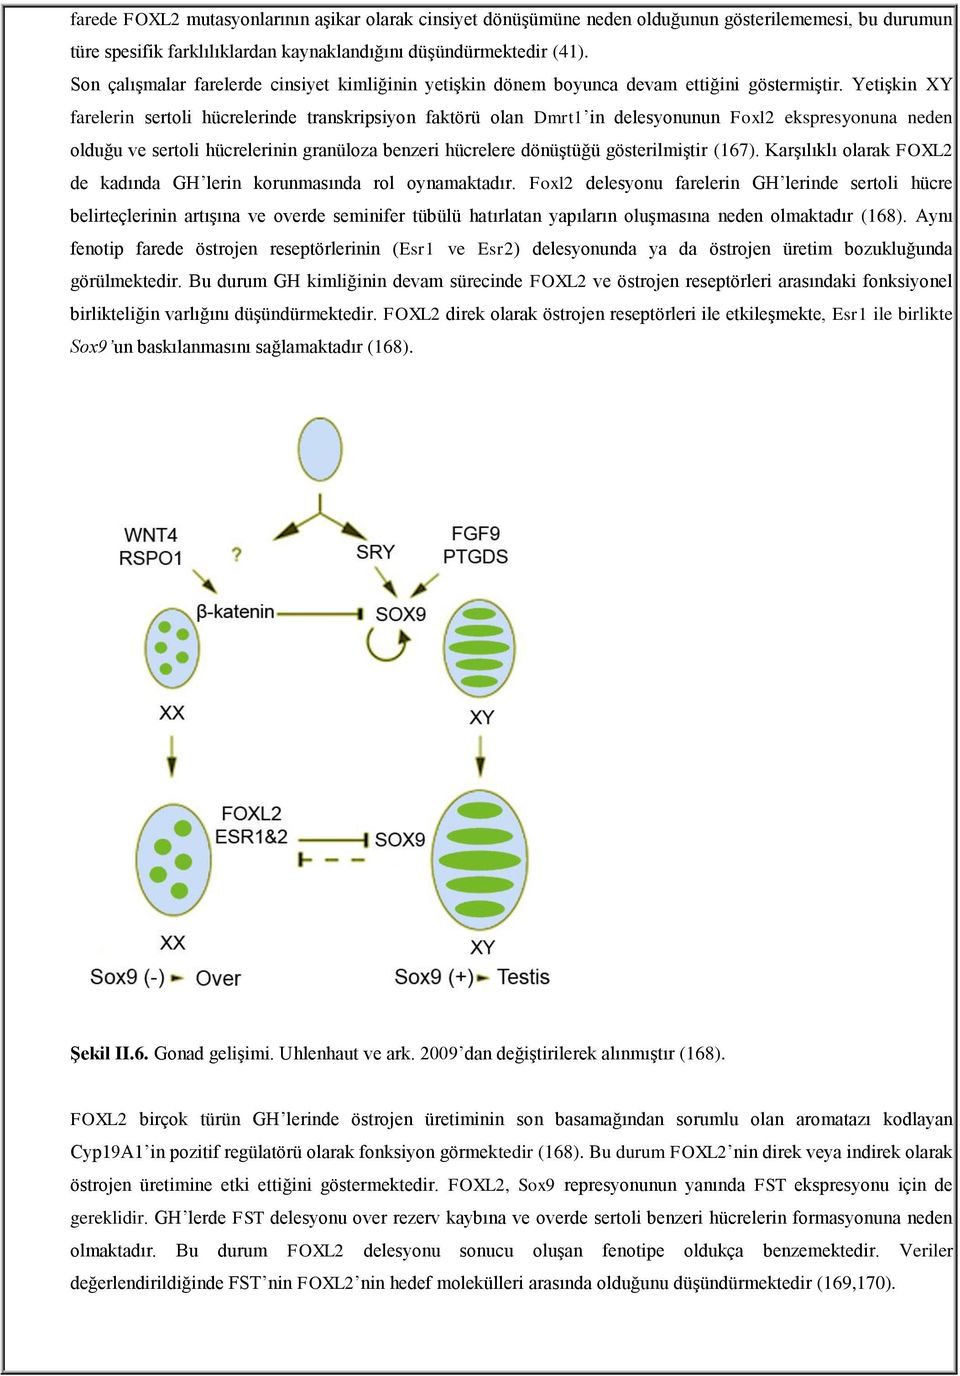 Yetişkin XY farelerin sertoli hücrelerinde transkripsiyon faktörü olan Dmrt1 in delesyonunun Foxl2 ekspresyonuna neden olduğu ve sertoli hücrelerinin granüloza benzeri hücrelere dönüştüğü